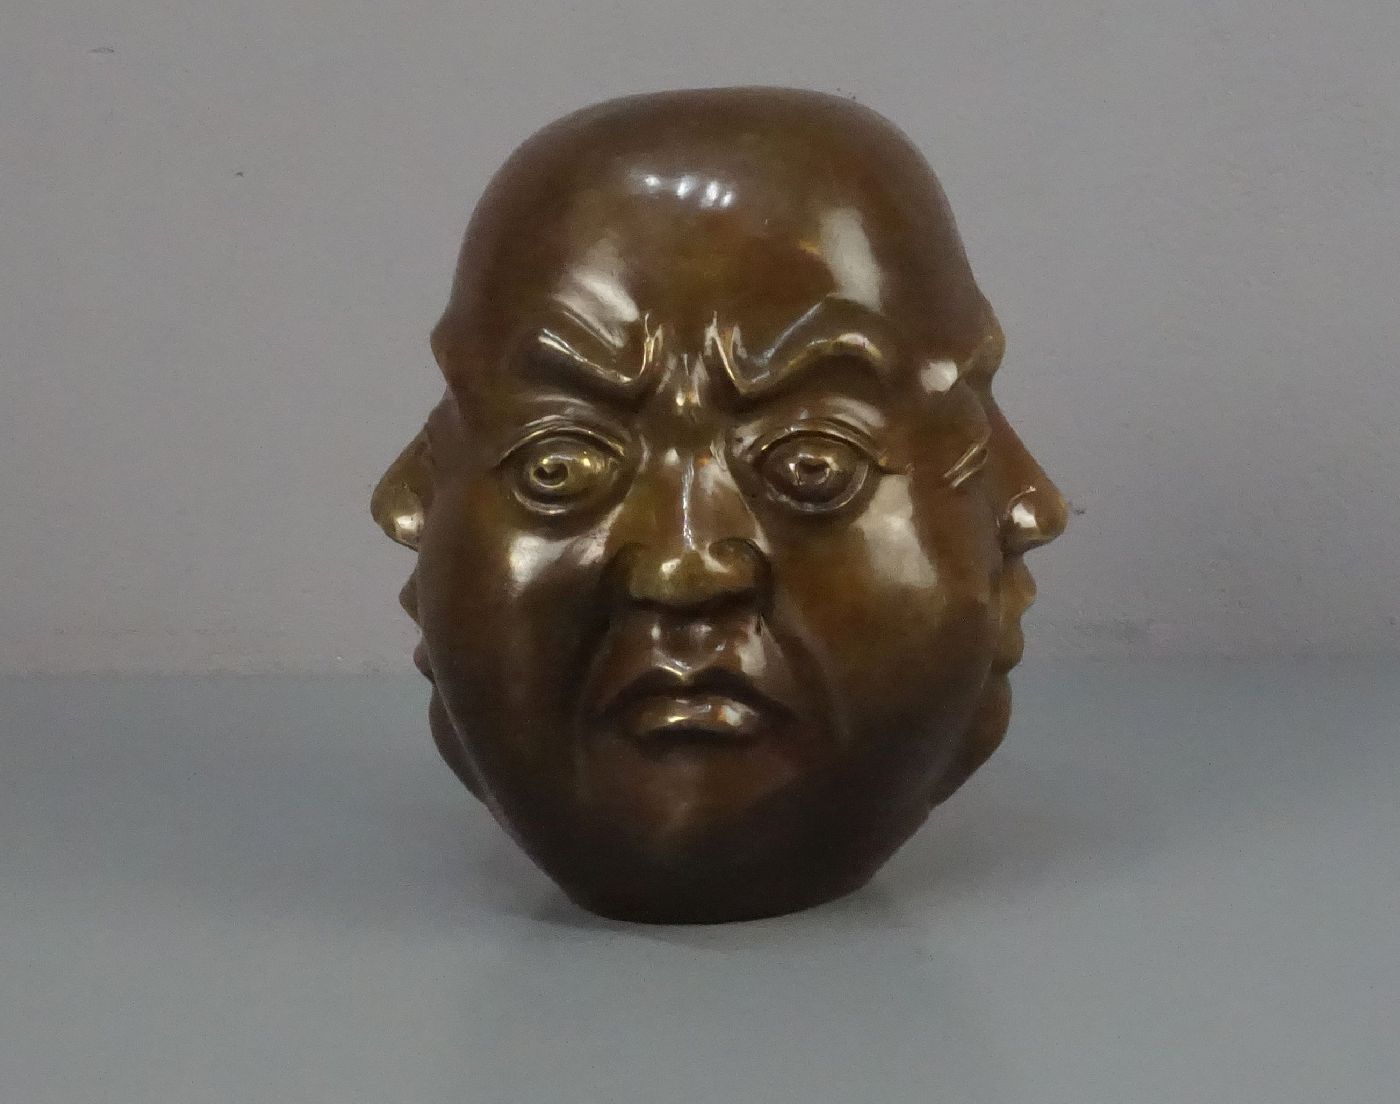 CHINESISCHER BILDHAUER des 20. Jh., Skulptur / sculpture: "Kopf mit vier Gesichtern", Bronze, - Bild 3 aus 5